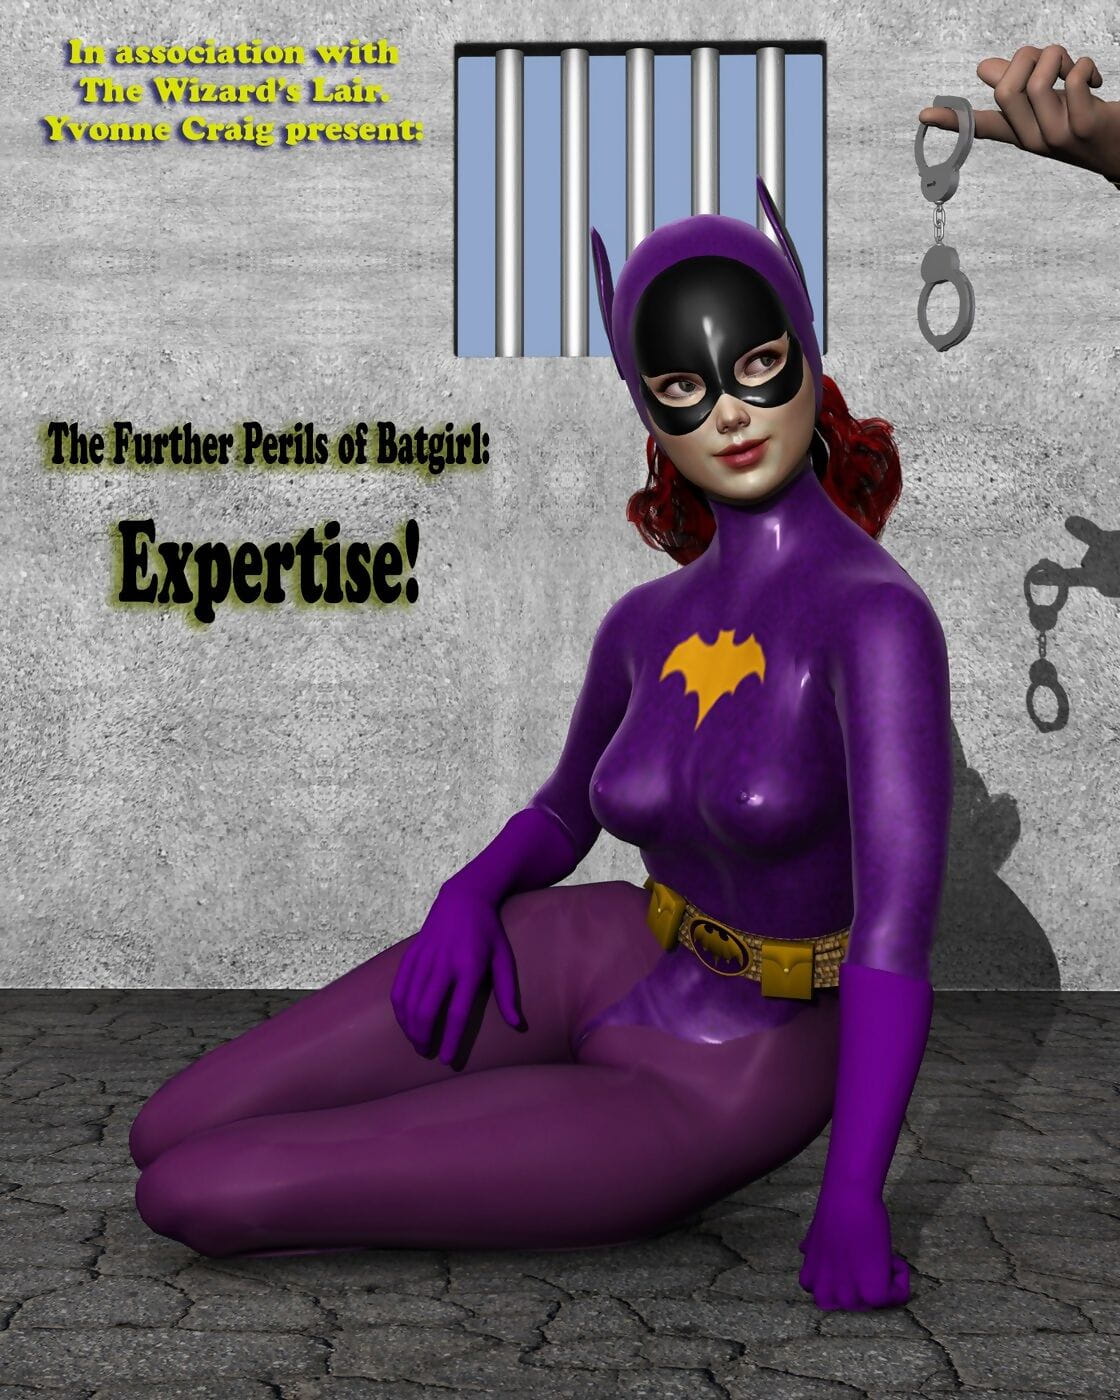 yvonne क्रेग के आगे खतरों के batgirl – विशेषज्ञता